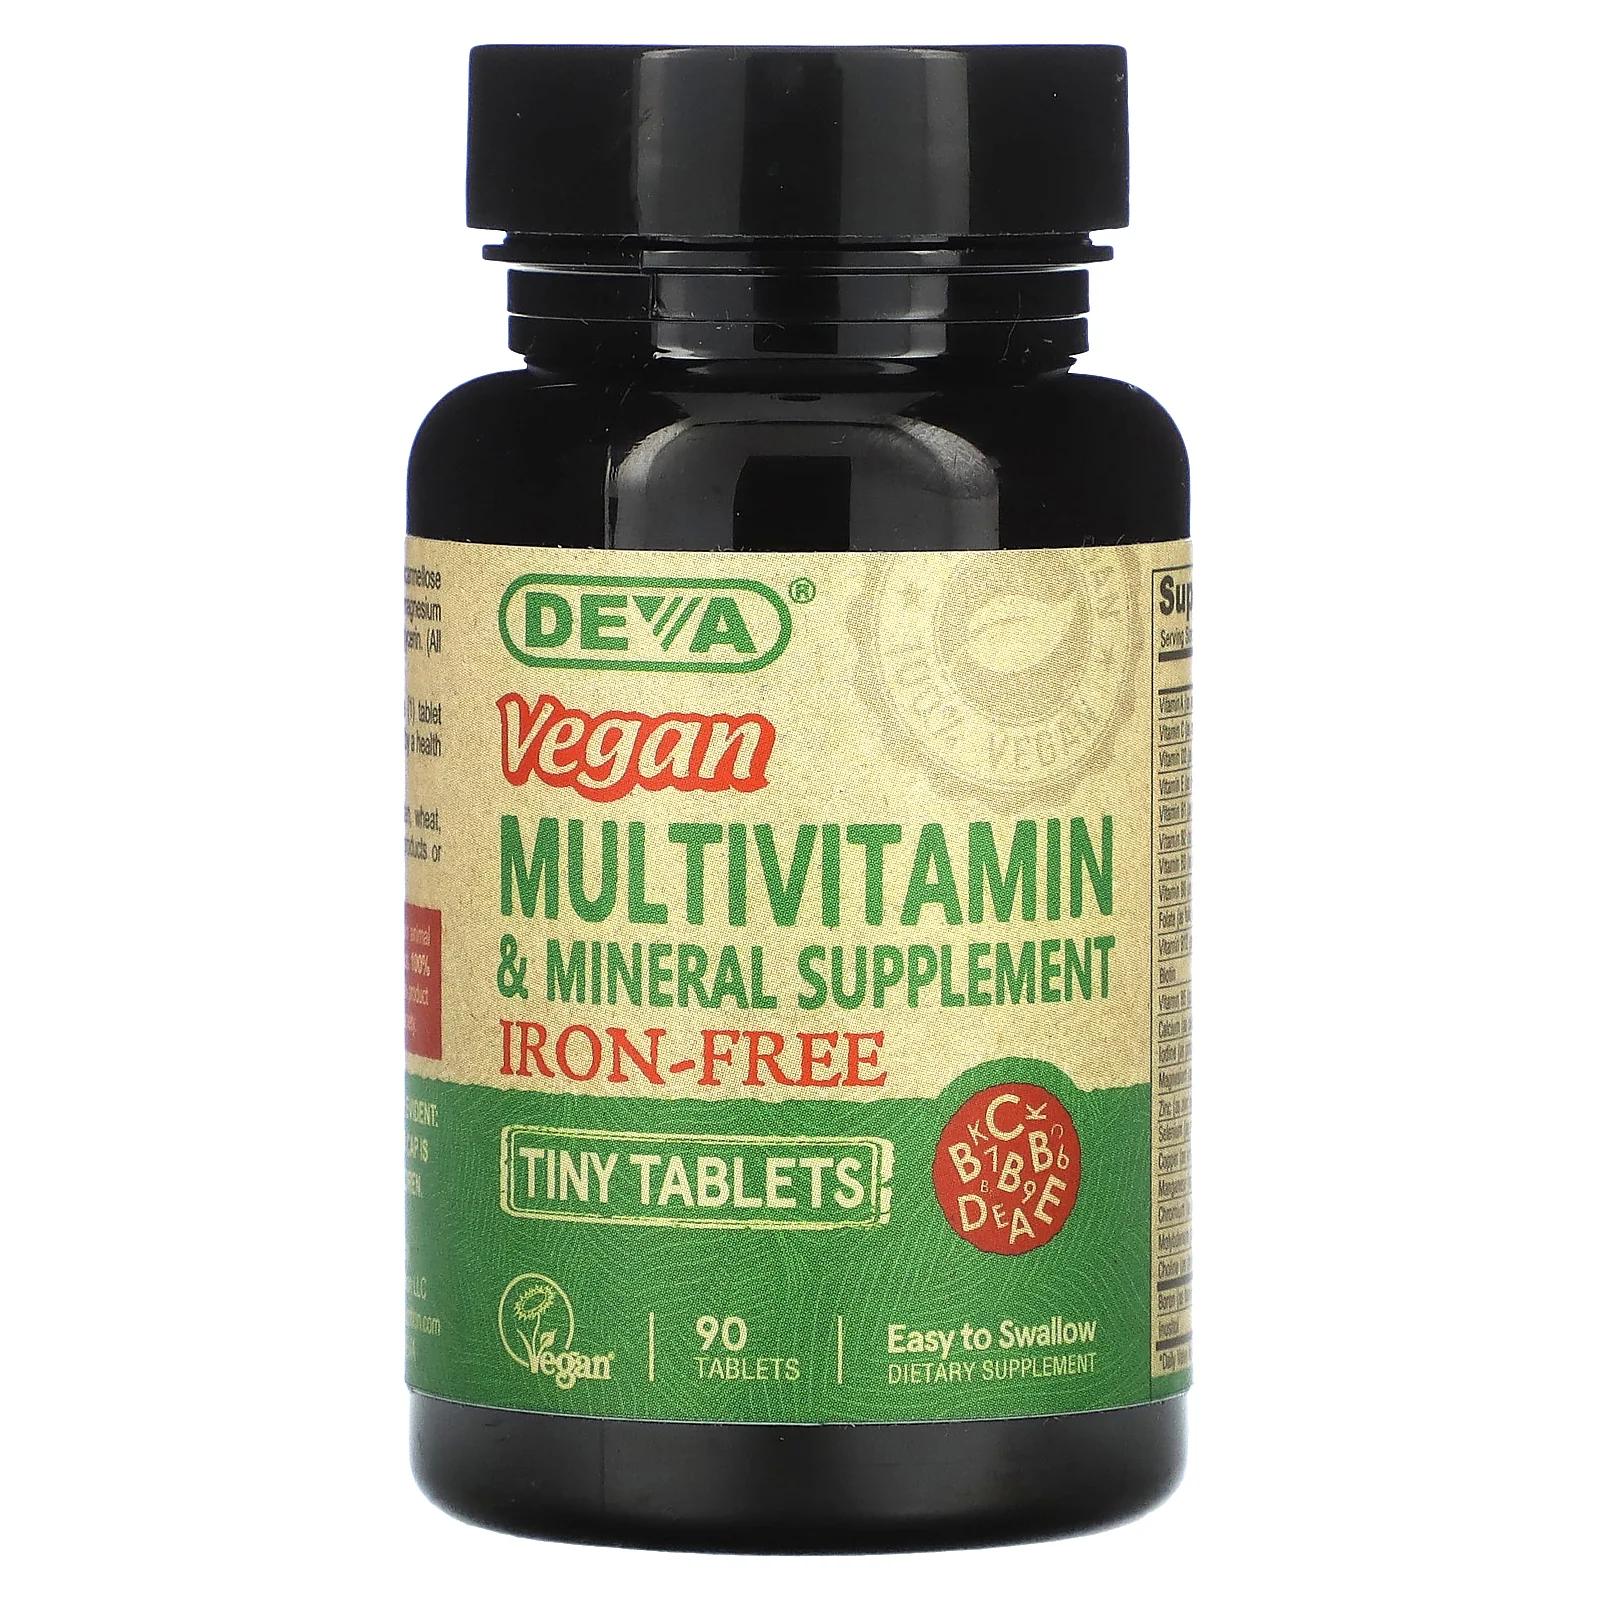 Deva мультивитаминная и минеральная добавка в мини-таблетках для веганов без железа 90 таблеток deva мультивитаминная и минеральная добавка для веганов один раз в день 90 таблеток